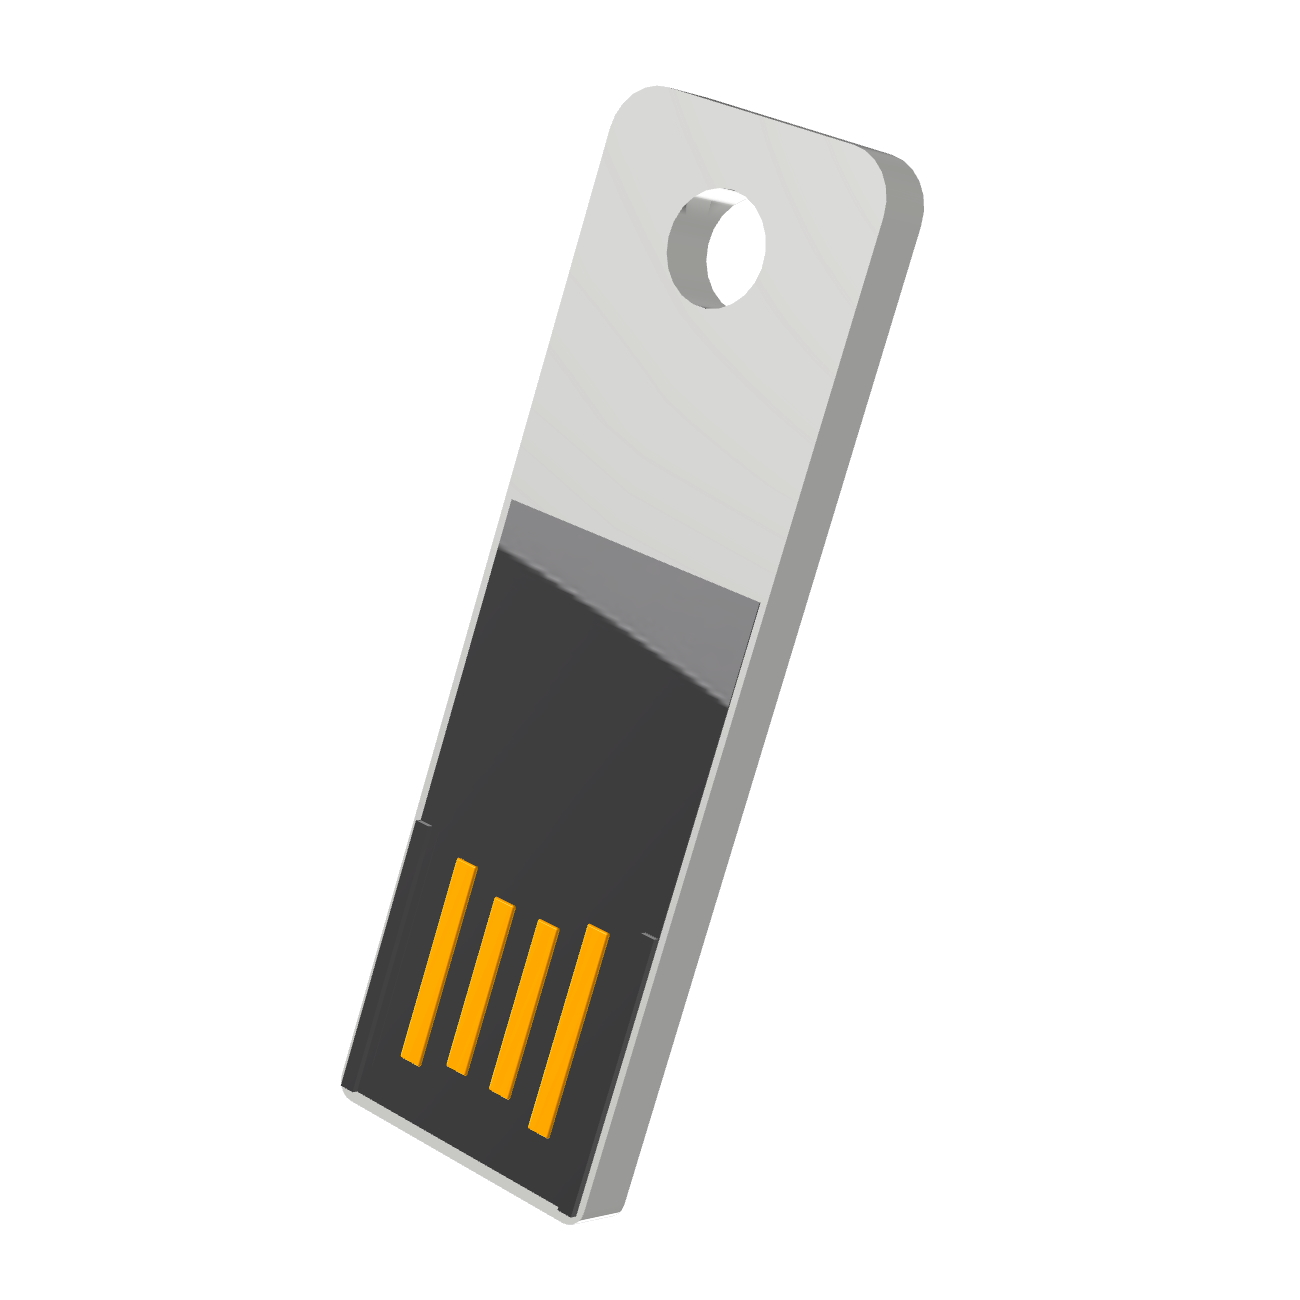 GB) USB 1 GERMANY USB-Stick Slim ® Mini (Weiß,